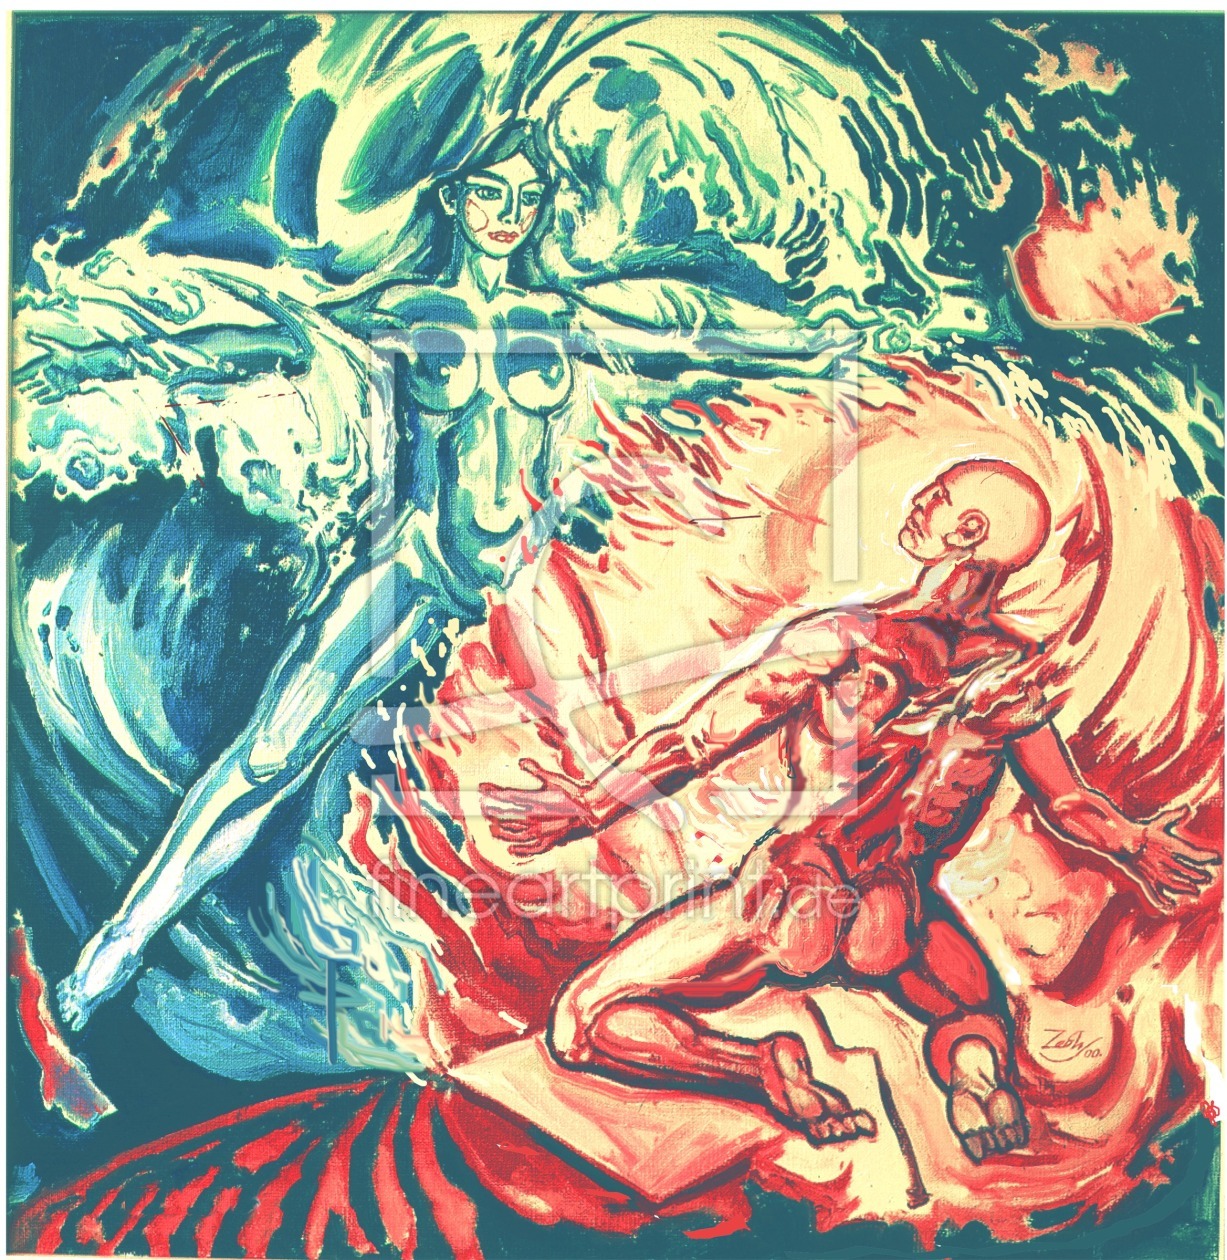 Bild-Nr.: 9639388 Allegorie: Wasser und Feuer, oder Venus und Vulkan. erstellt von OlegTchebunin